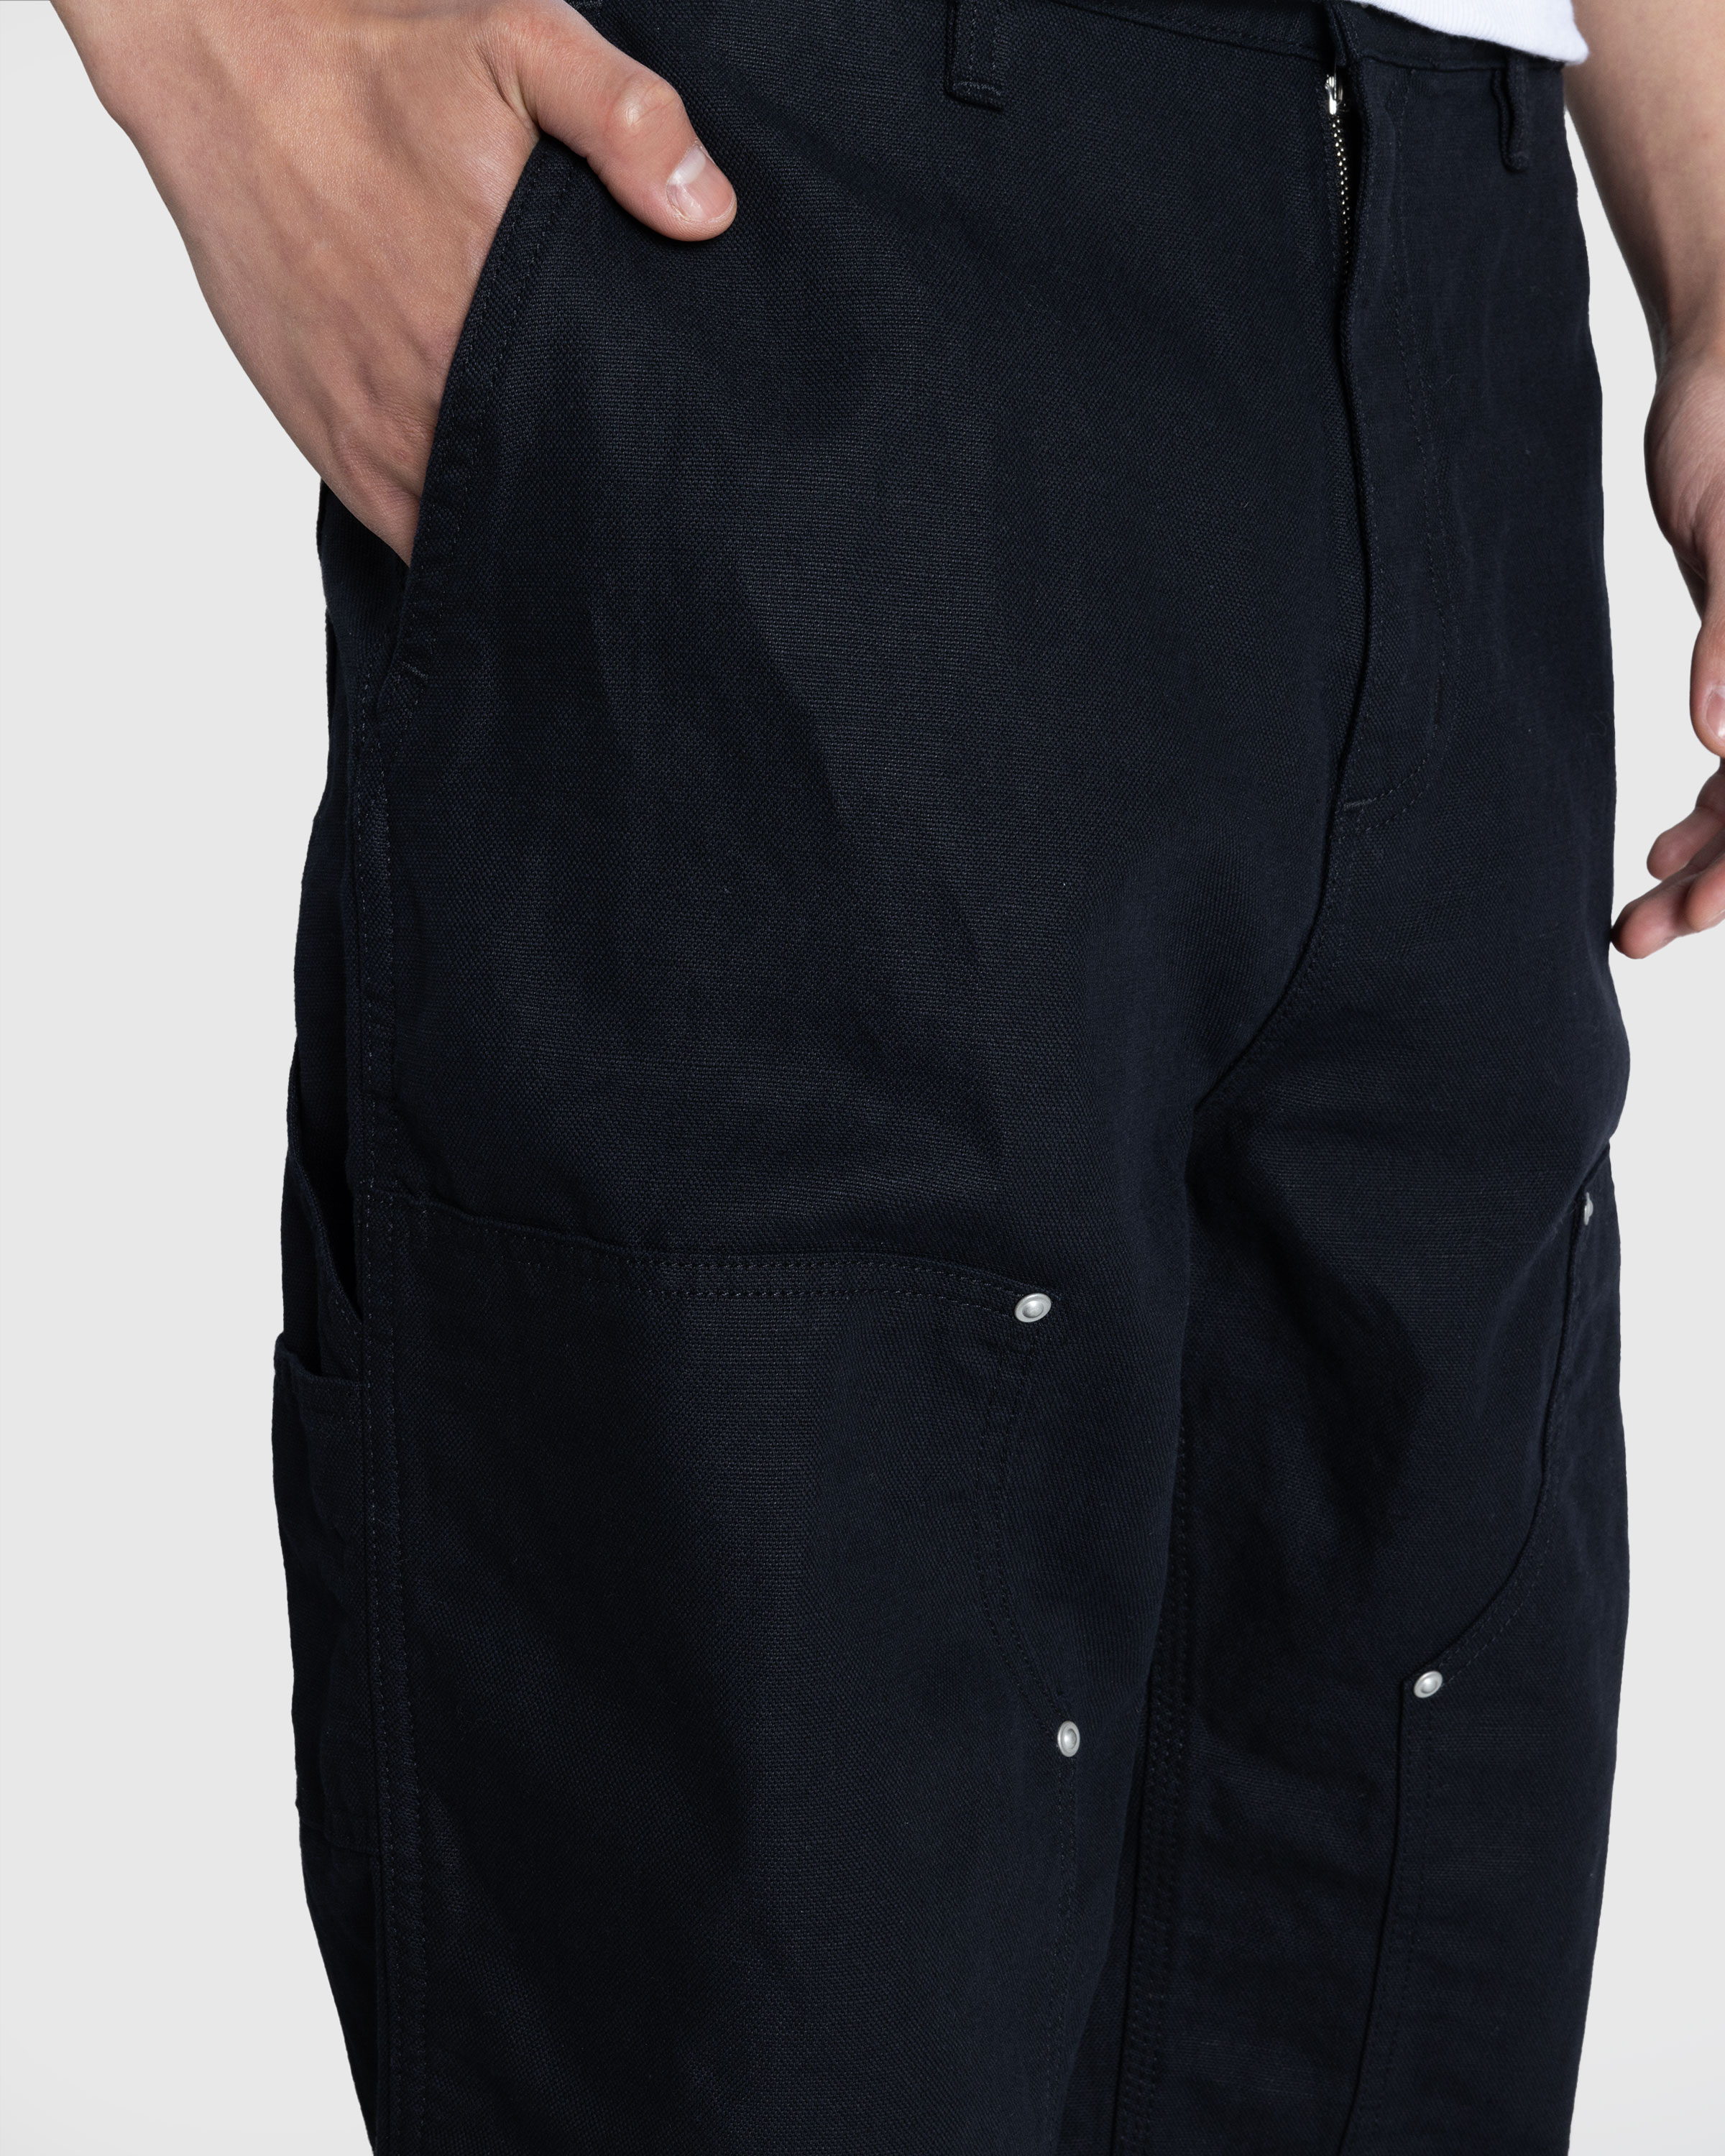 Carhartt WIP – Walter Double Knee Pant Black/Rinsed - Work Pants - Black - Image 5